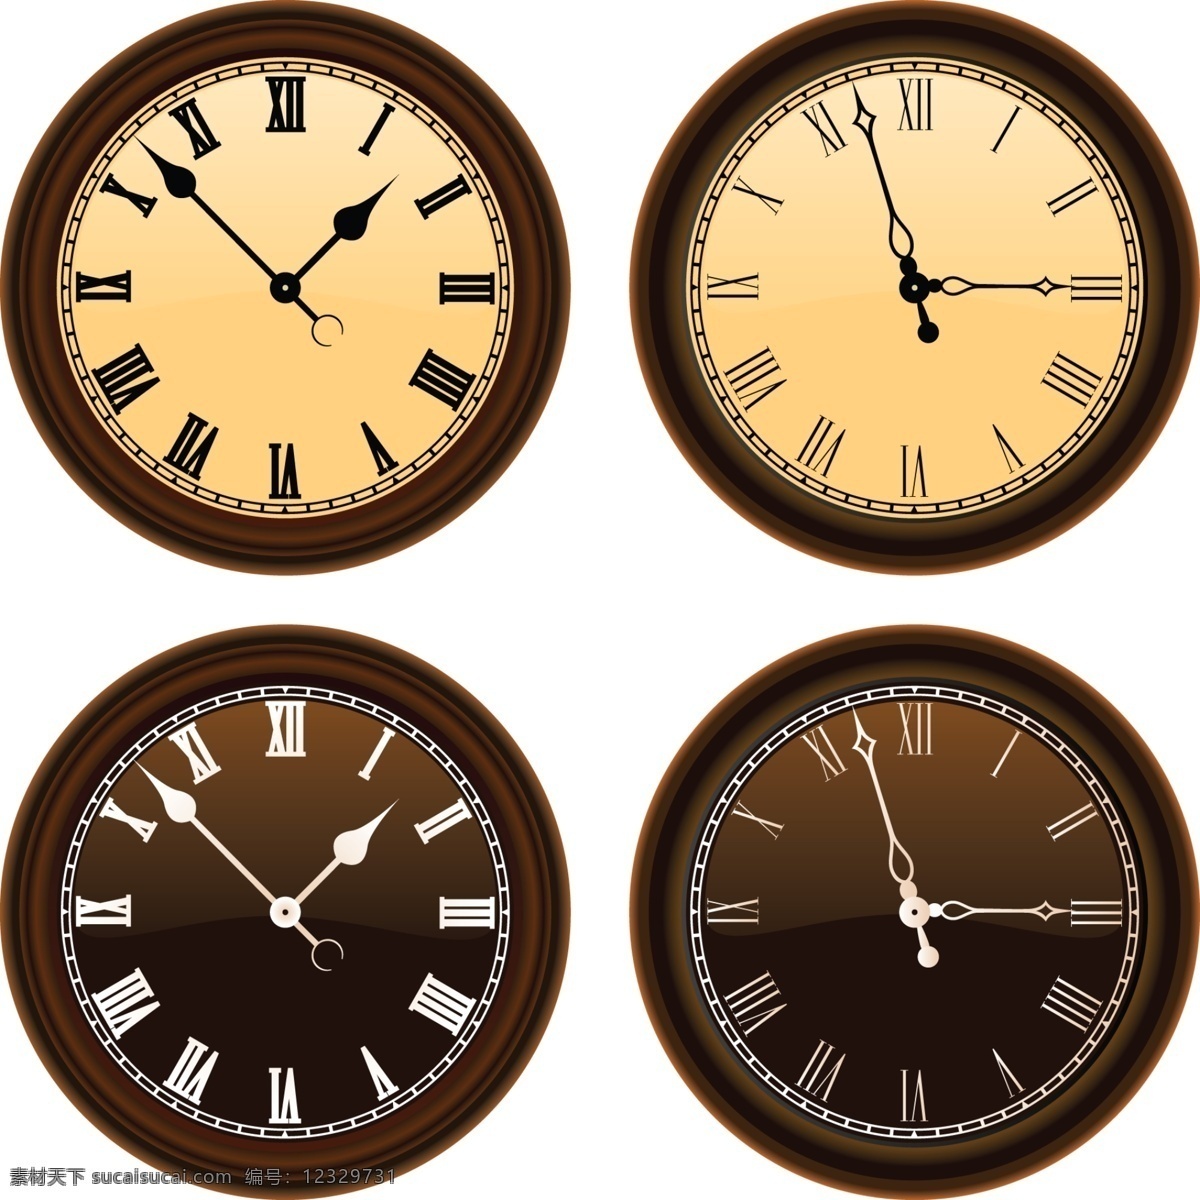 经典的老时钟 老时钟 钟表 时钟 钟 时间 生活用品 生活百科 矢量素材 白色